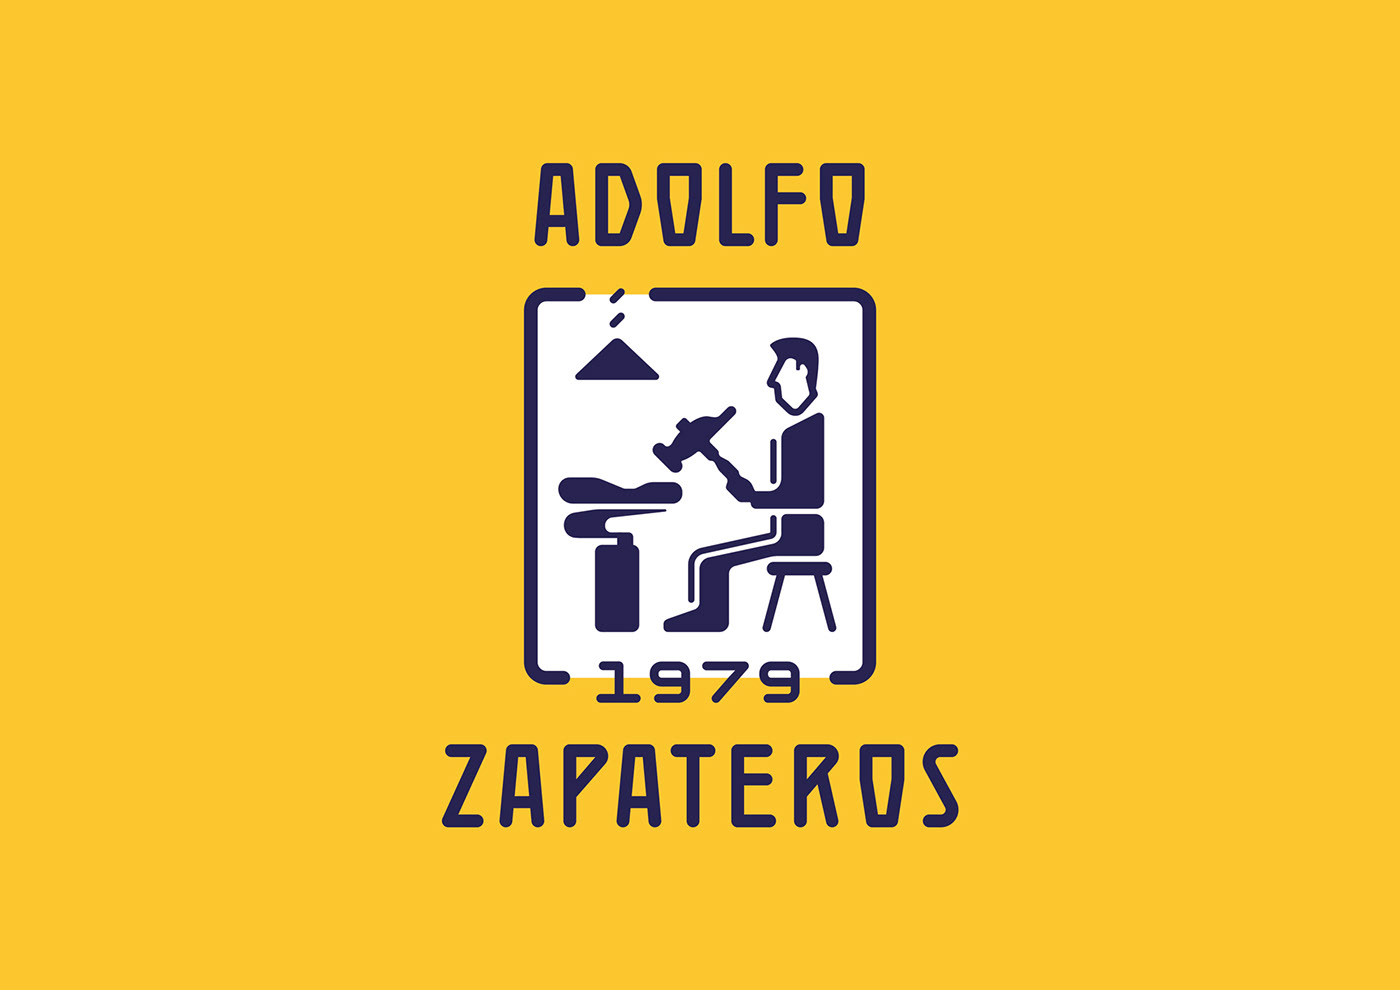 artesanal azulejos calzado Hecho a mano Reparación sevilla tipografia Zapateros zapato